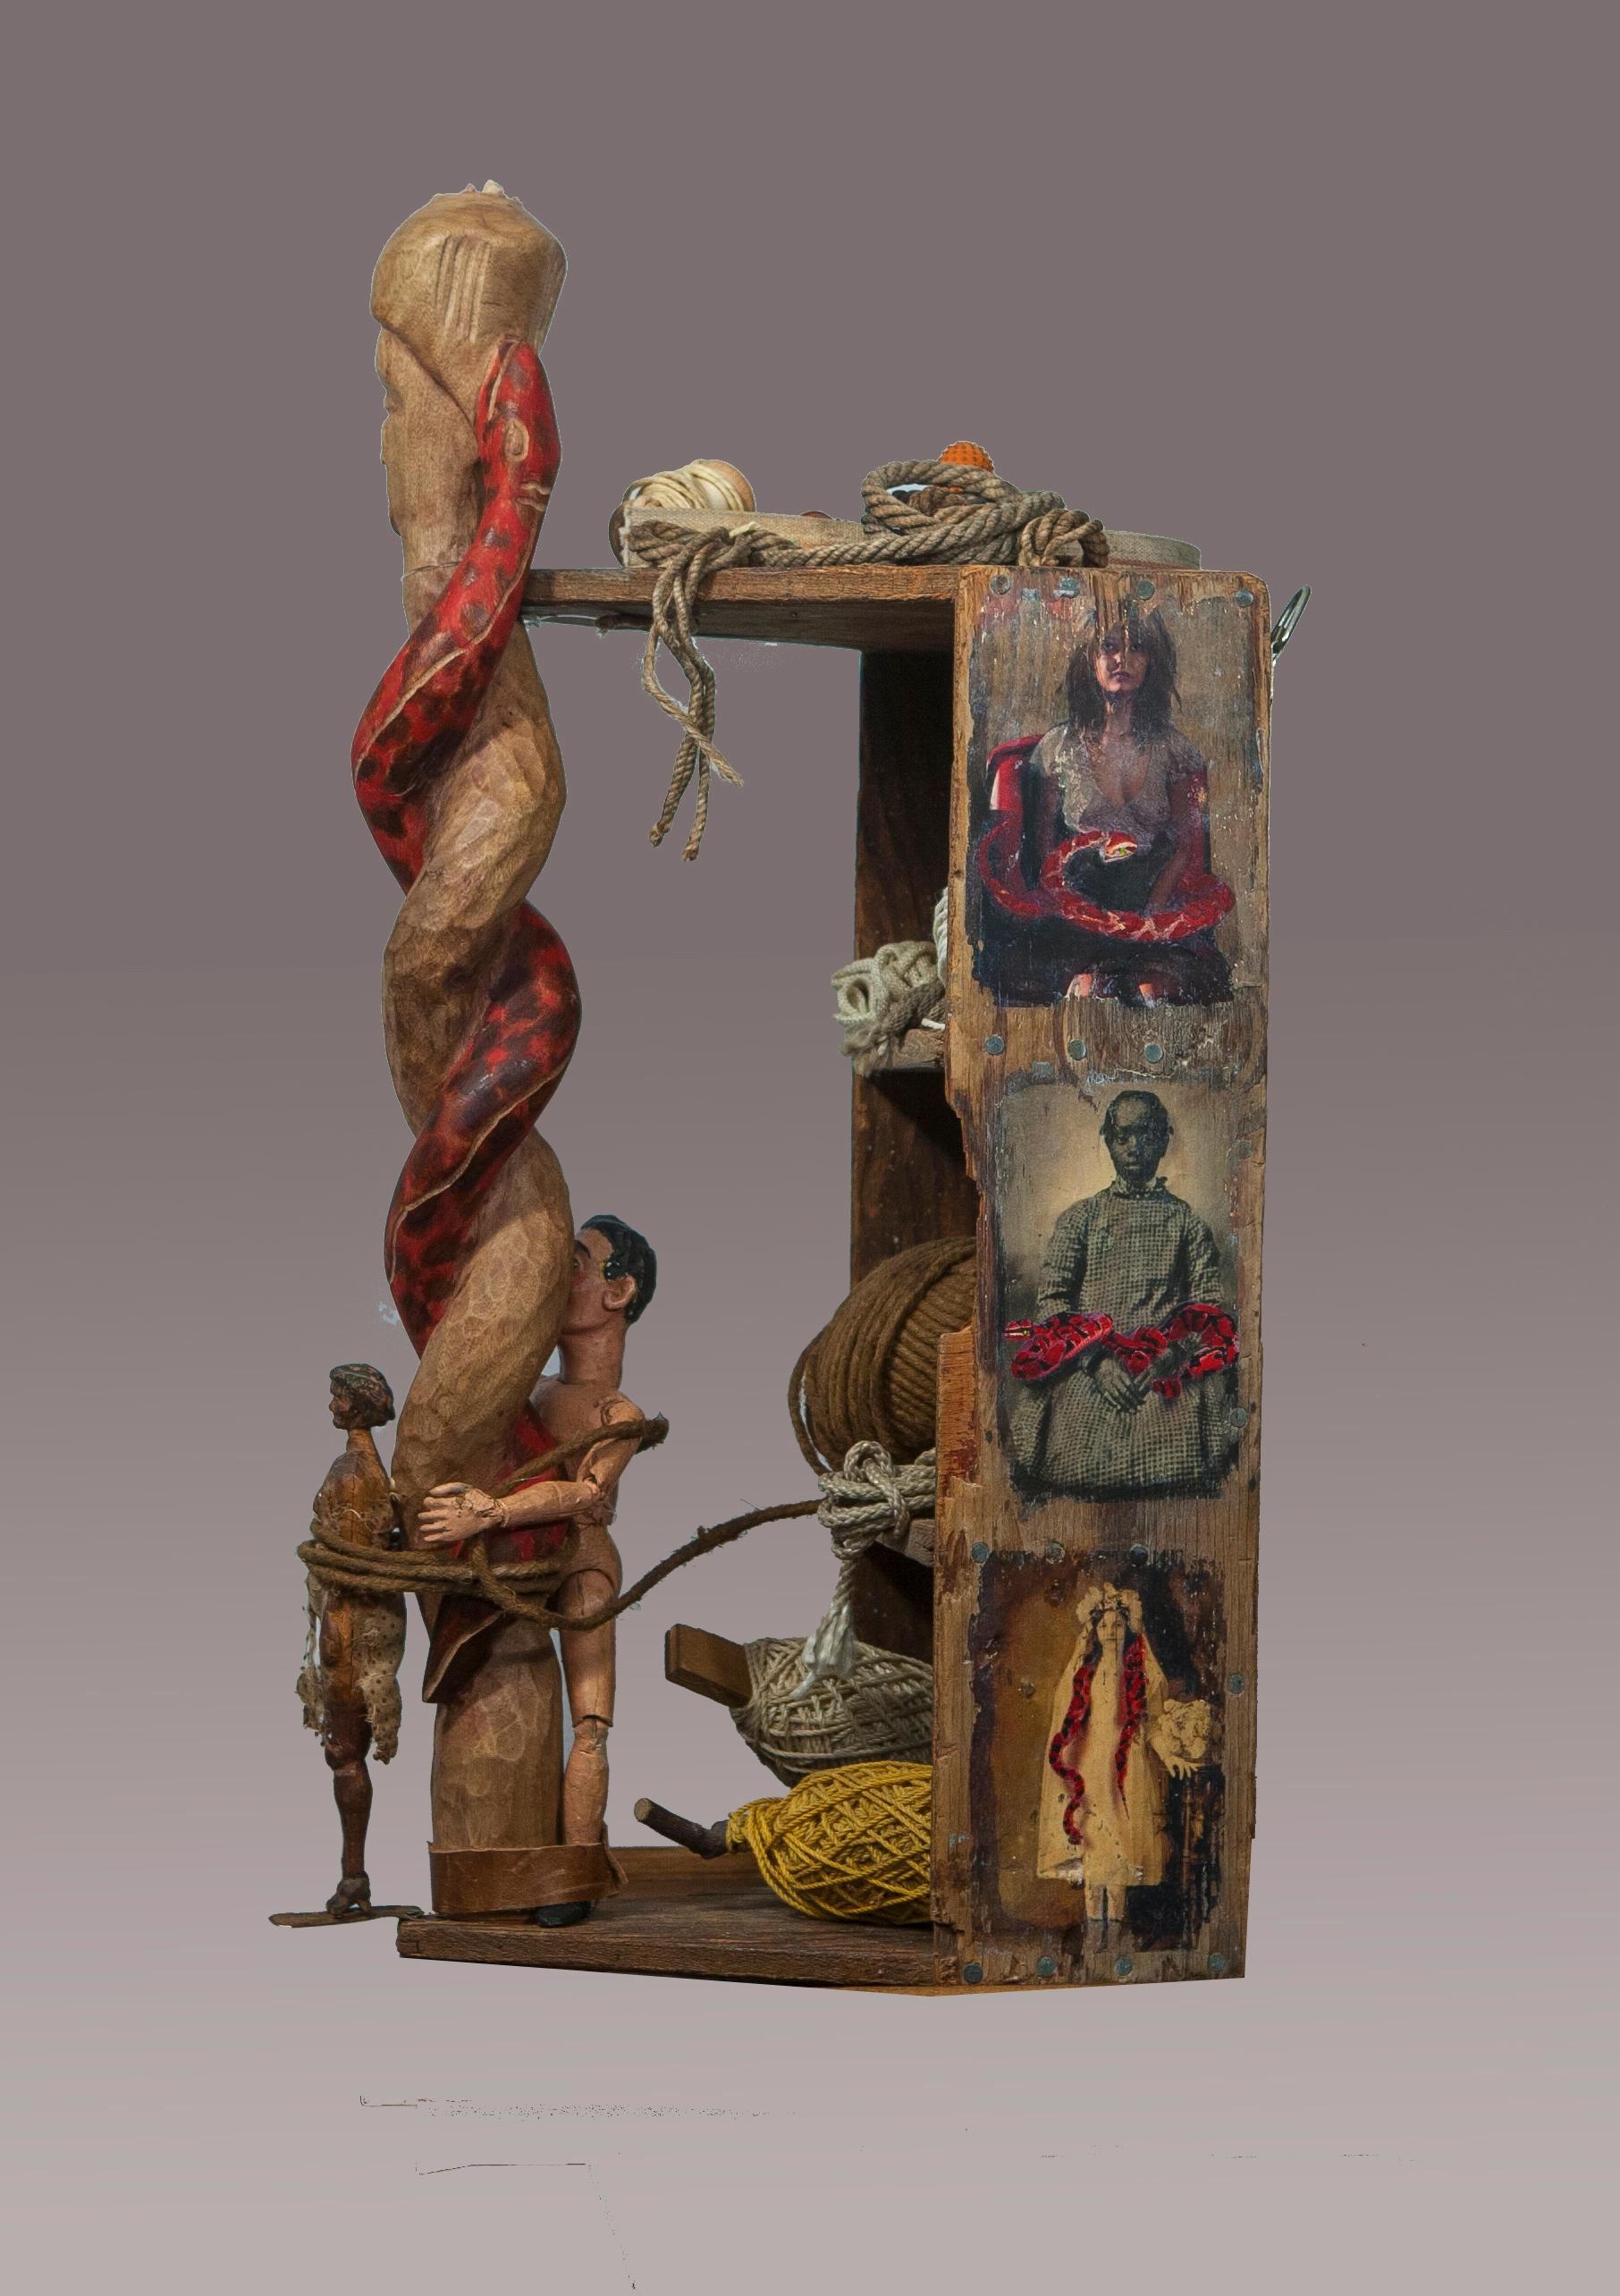 assemblage-Skulptur: Handgeschnitzte Frau aus Holz, die an einen handgeschnitzten Stab einer Frau mit Schlange gebunden ist, der als Griff eines alten Holzwerkzeugkastens dient, alte Schnur-, Garn- und Seilrollen, handgefertigter Mann aus Holz und